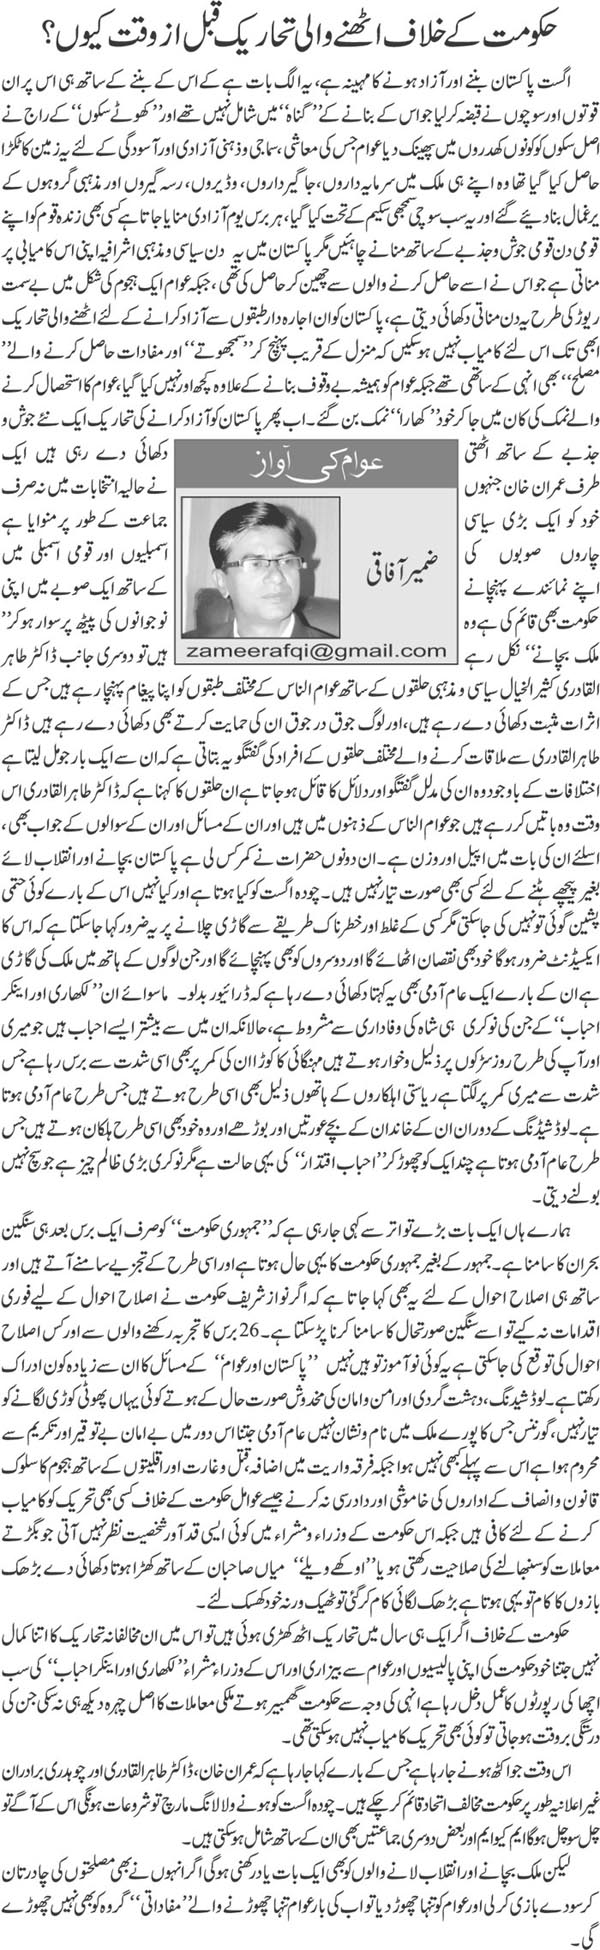 Minhaj-ul-Quran  Print Media Coverage Daily Jahan Pakistan [Zameer Afaaq]